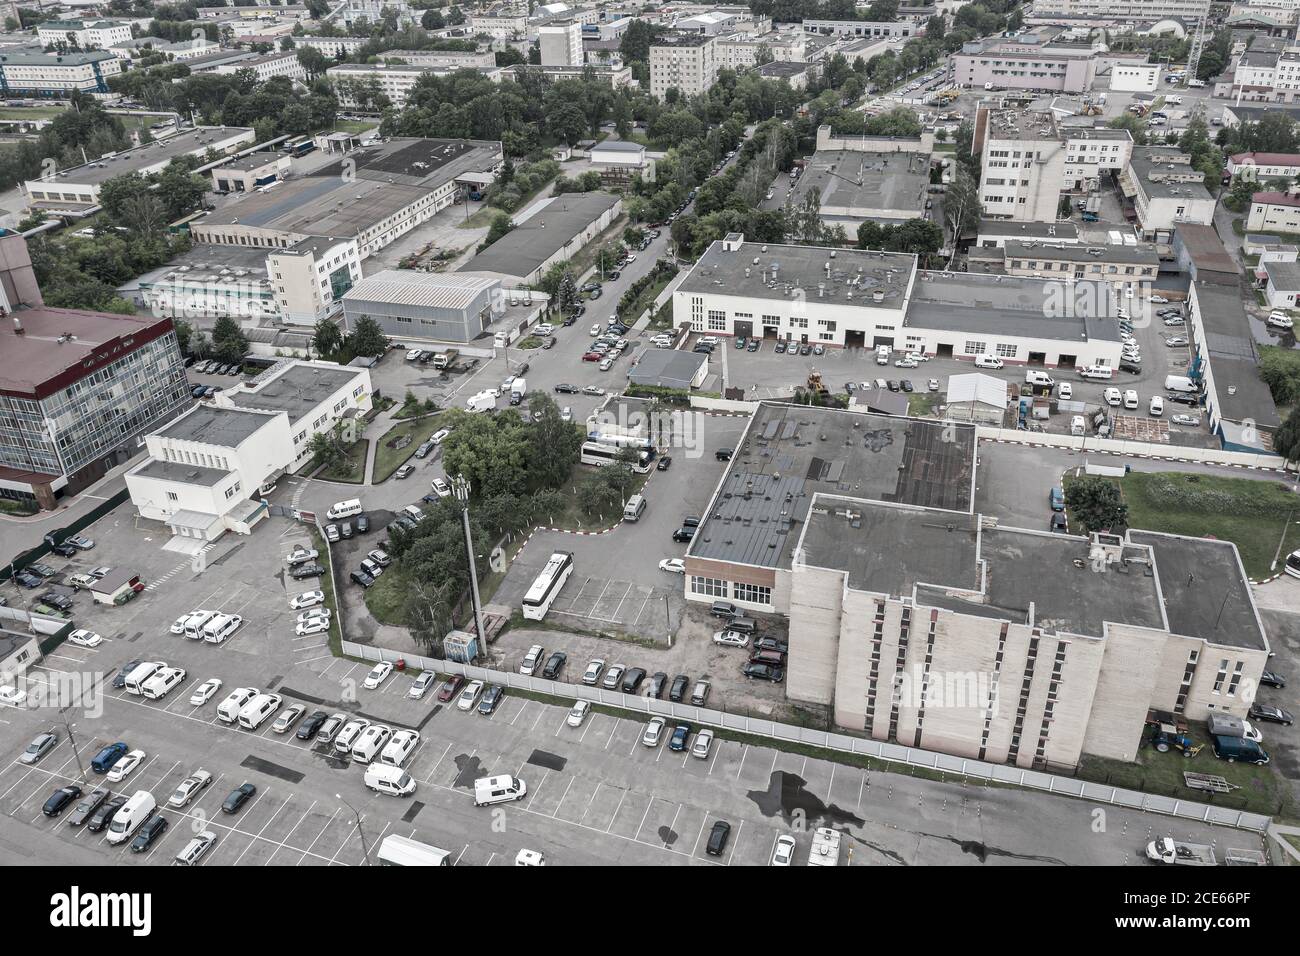 vista panoramica aerea della zona industriale e commerciale della città. fotografia di droni Foto Stock